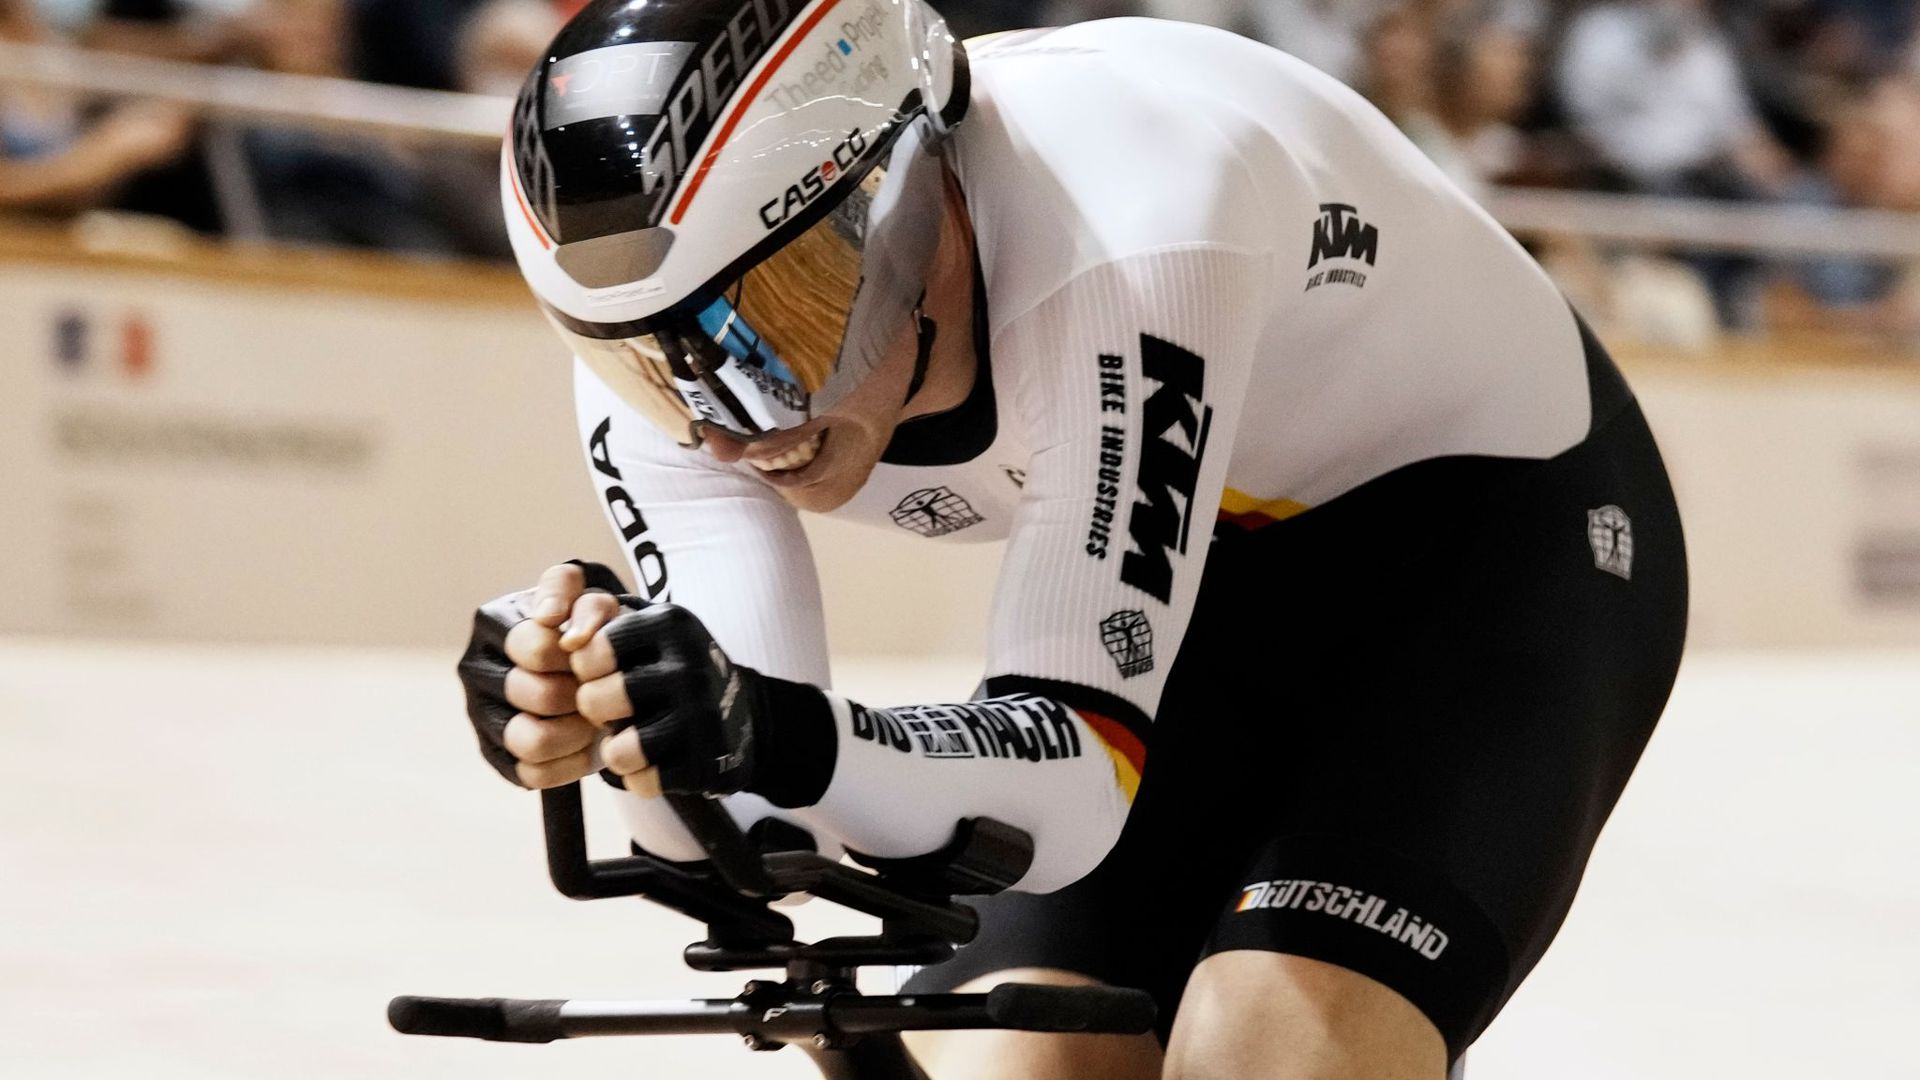 Holte die sechste deutsche Medaille bei der Bahnrad-WM in Roubaix: Joachim Eilers.